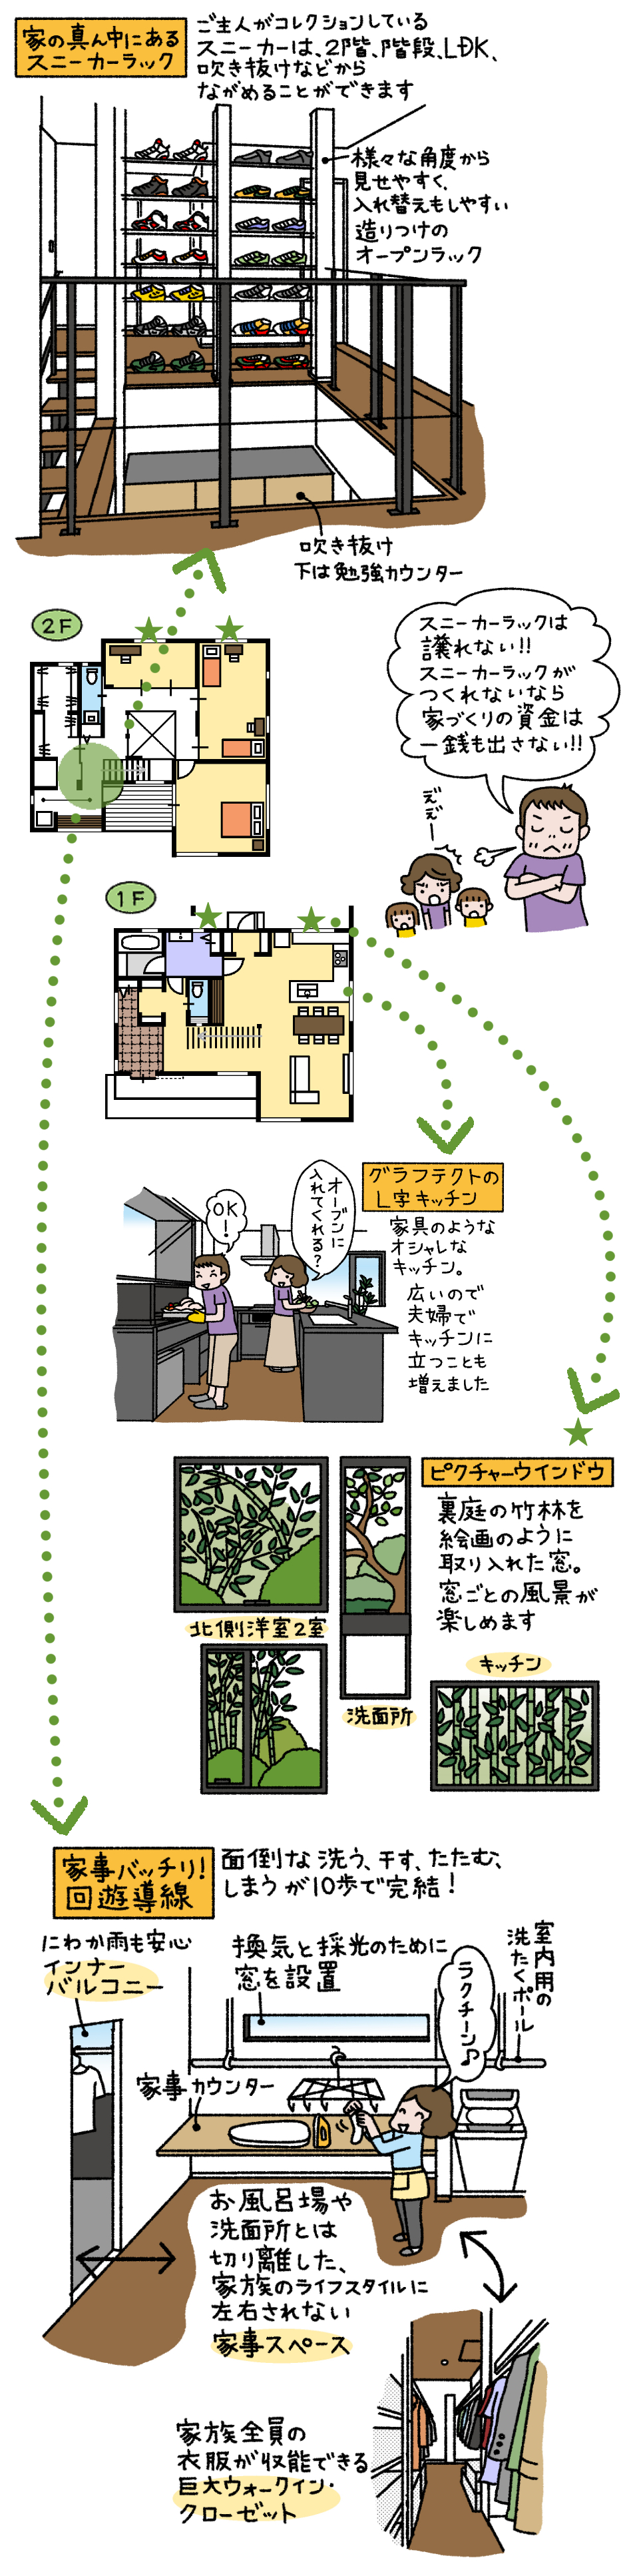 大好きなスニーカーを家の真ん中にカッコよく飾って いつでも眺めていたい 神奈川 横浜 相模原エリアの注文住宅ならビルドアート